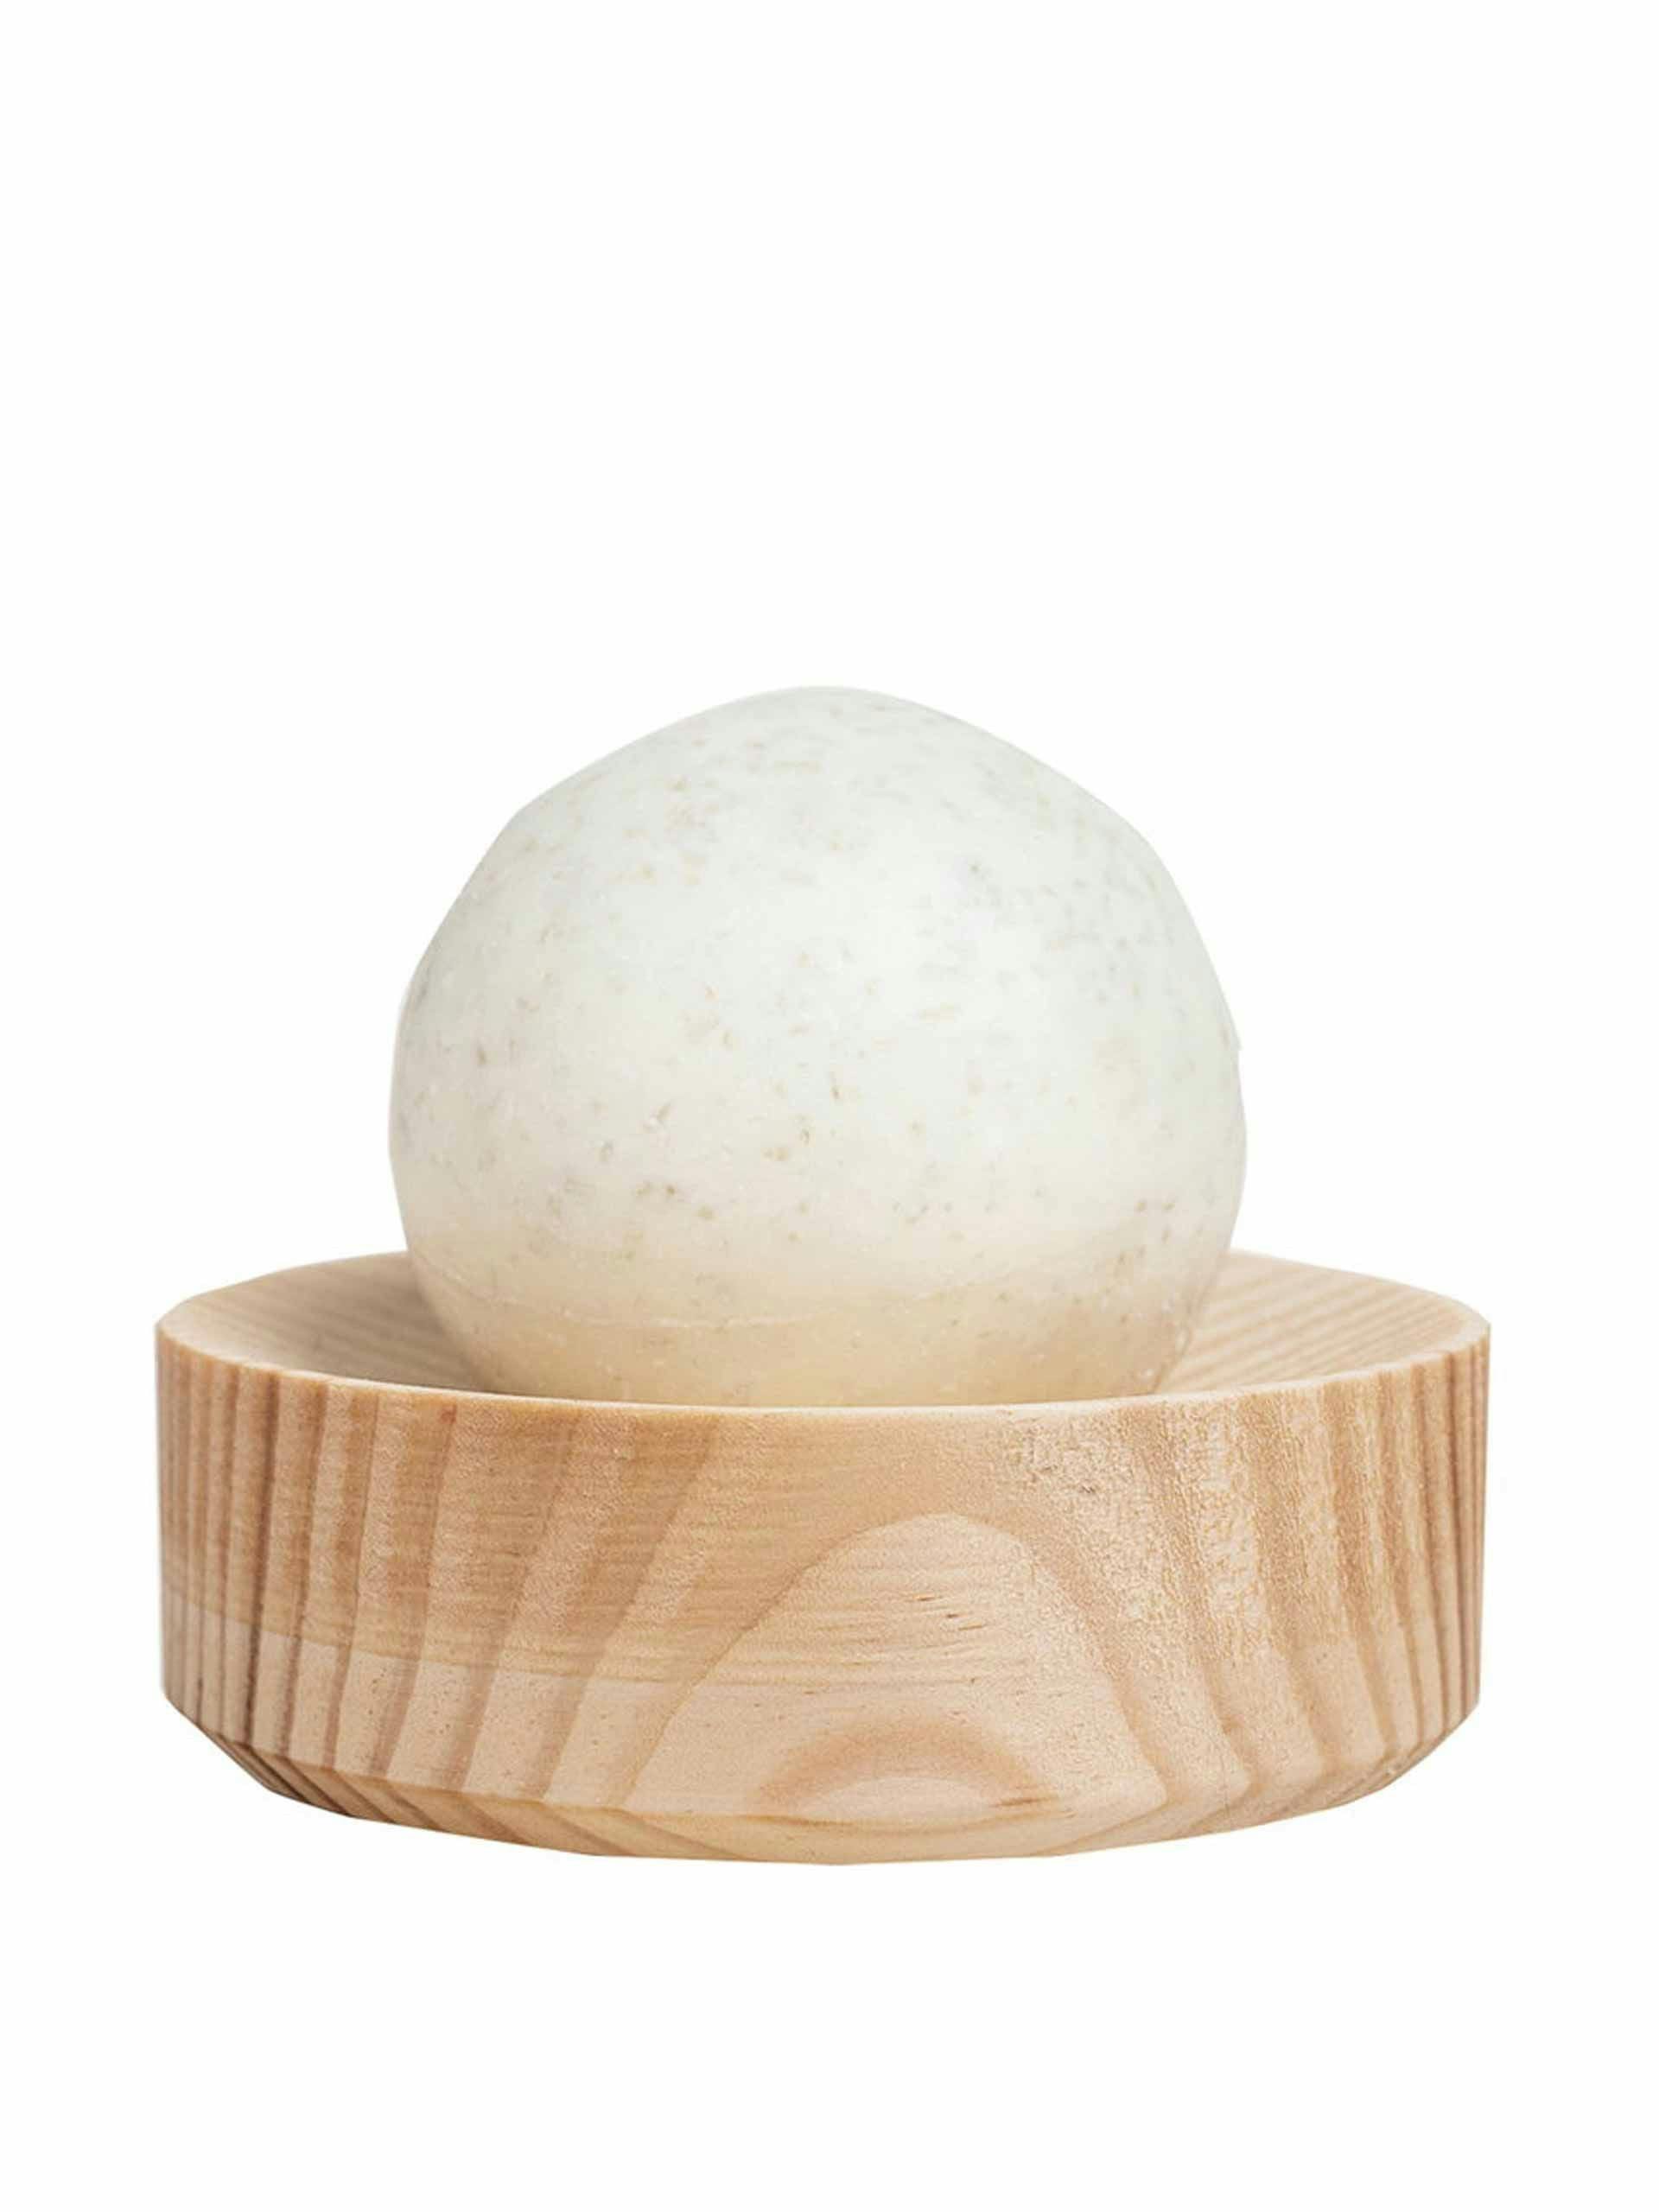 Salt soap set, round pine